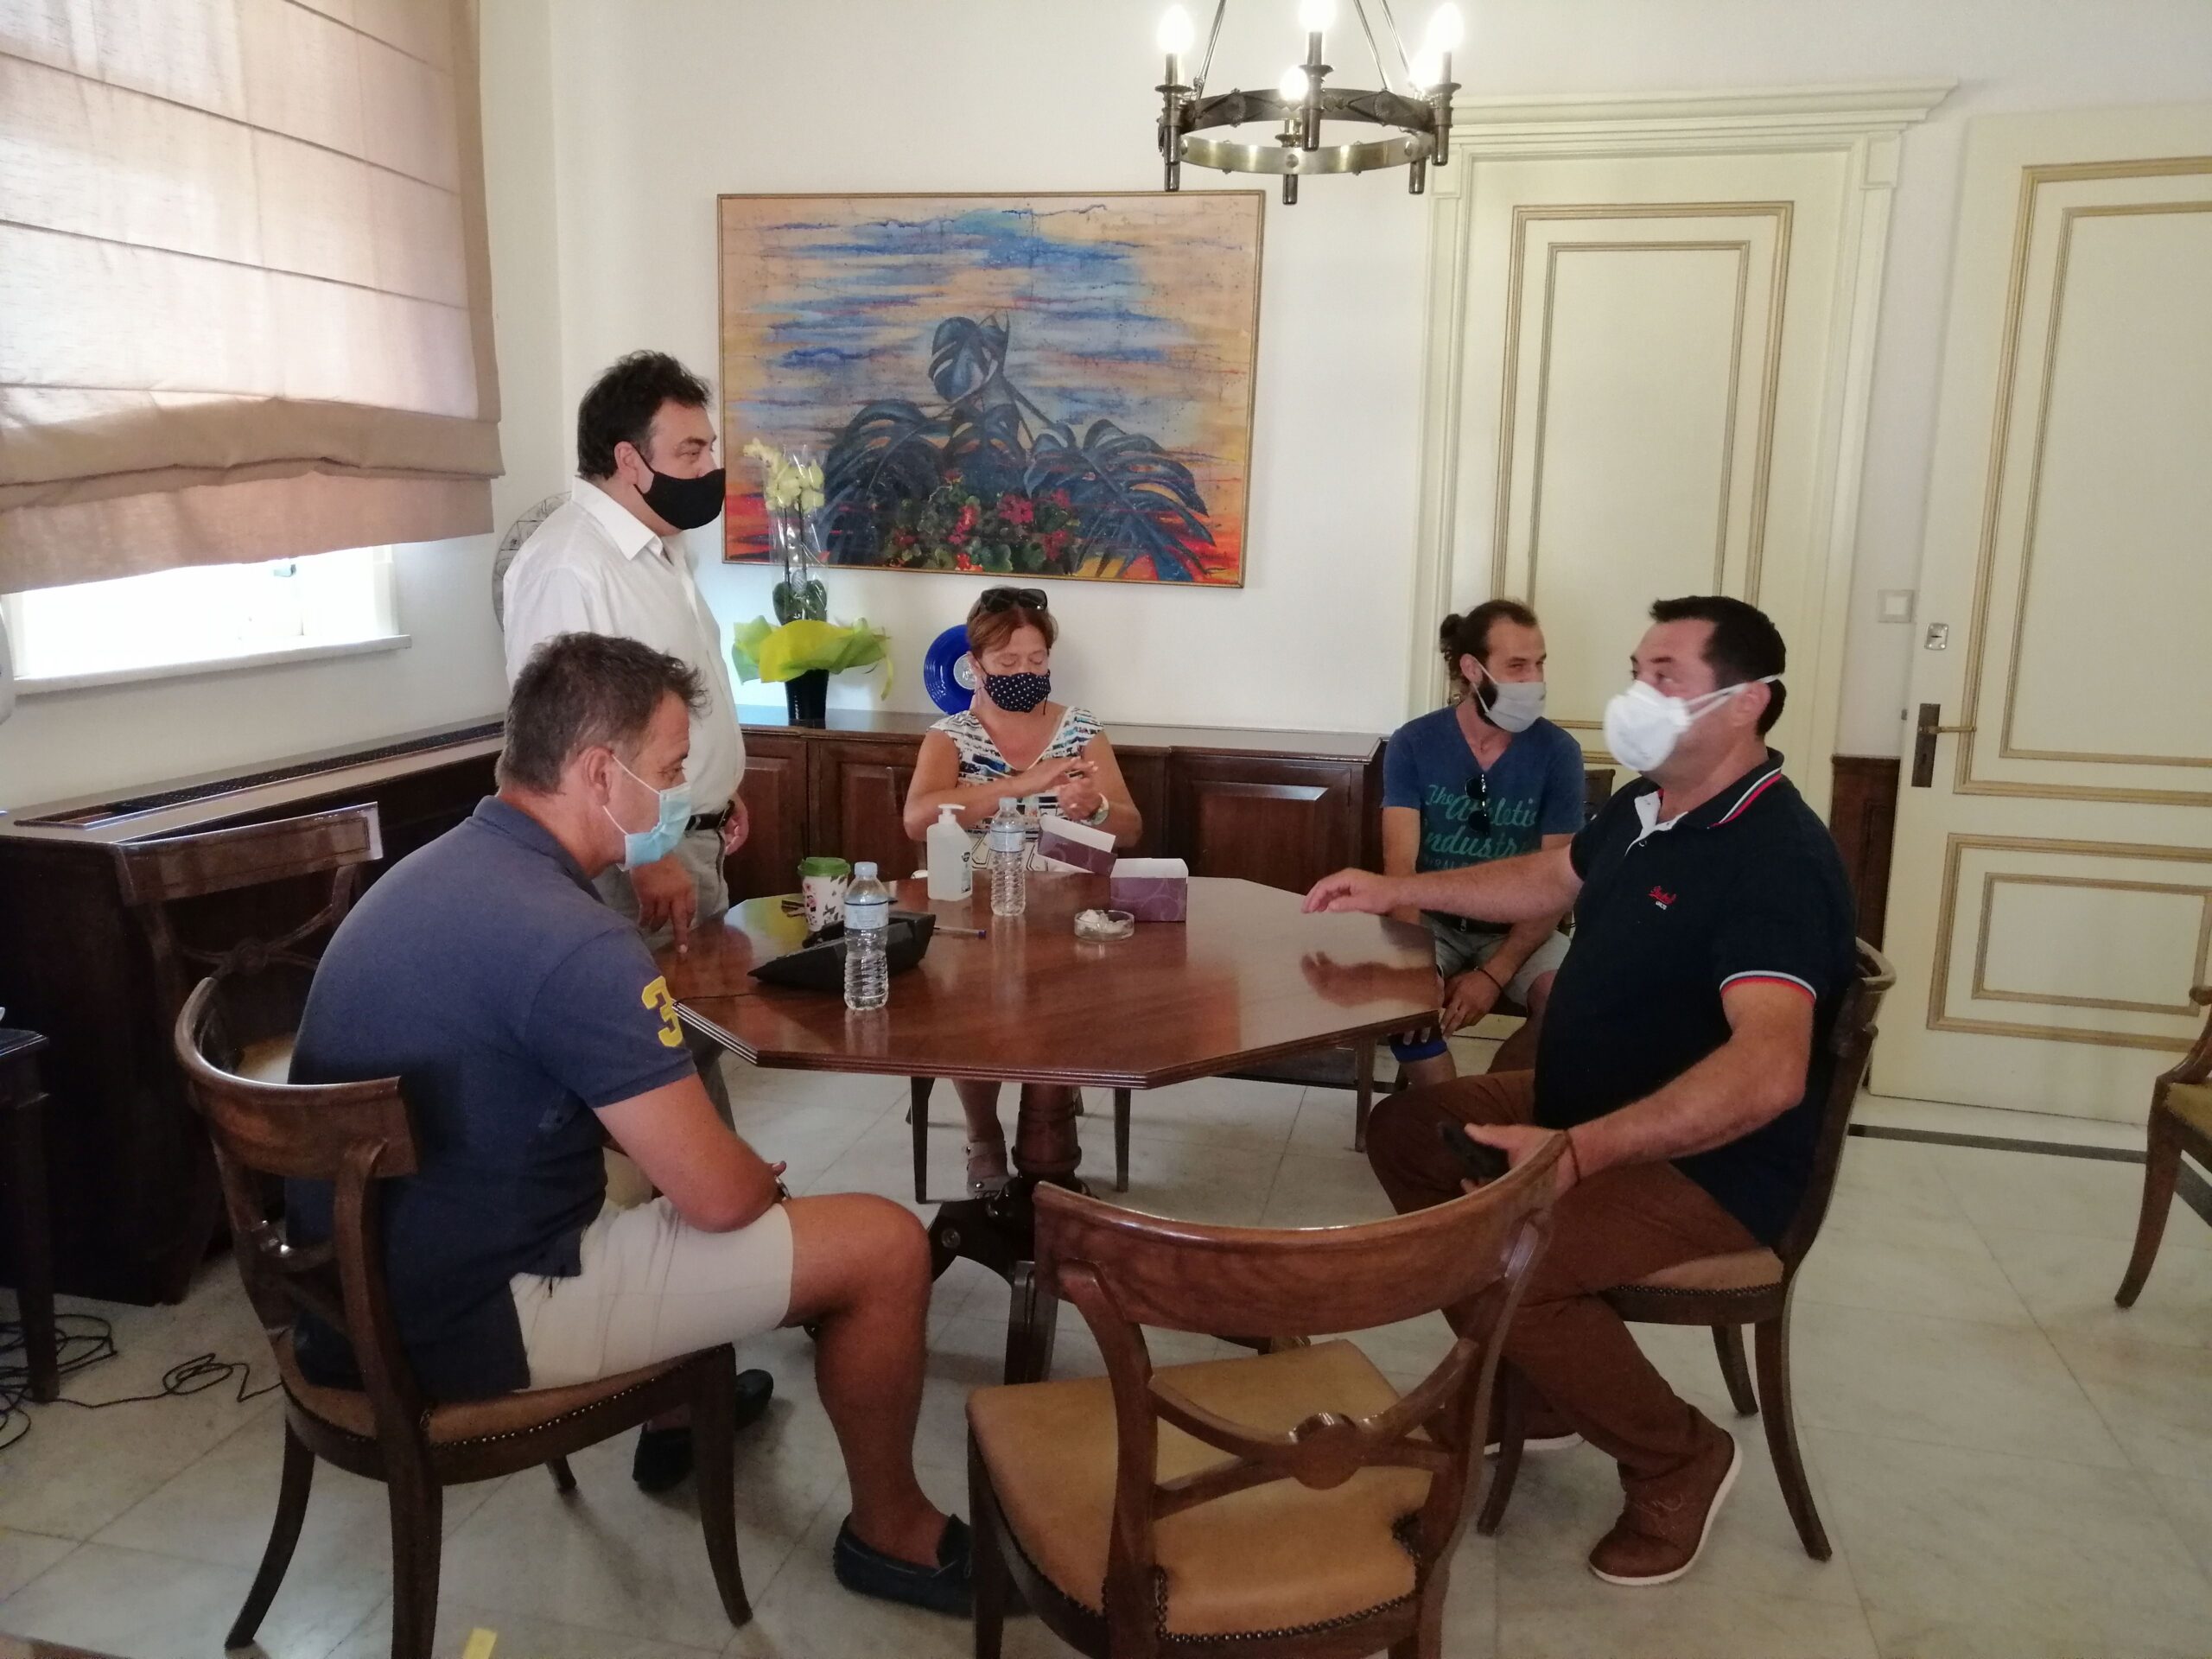 Δήμος Πύργου: Πλήθος ευχών στον Δήμαρχο Παναγιώτη Αντωνακόπουλο για την ονομαστική εορτή του